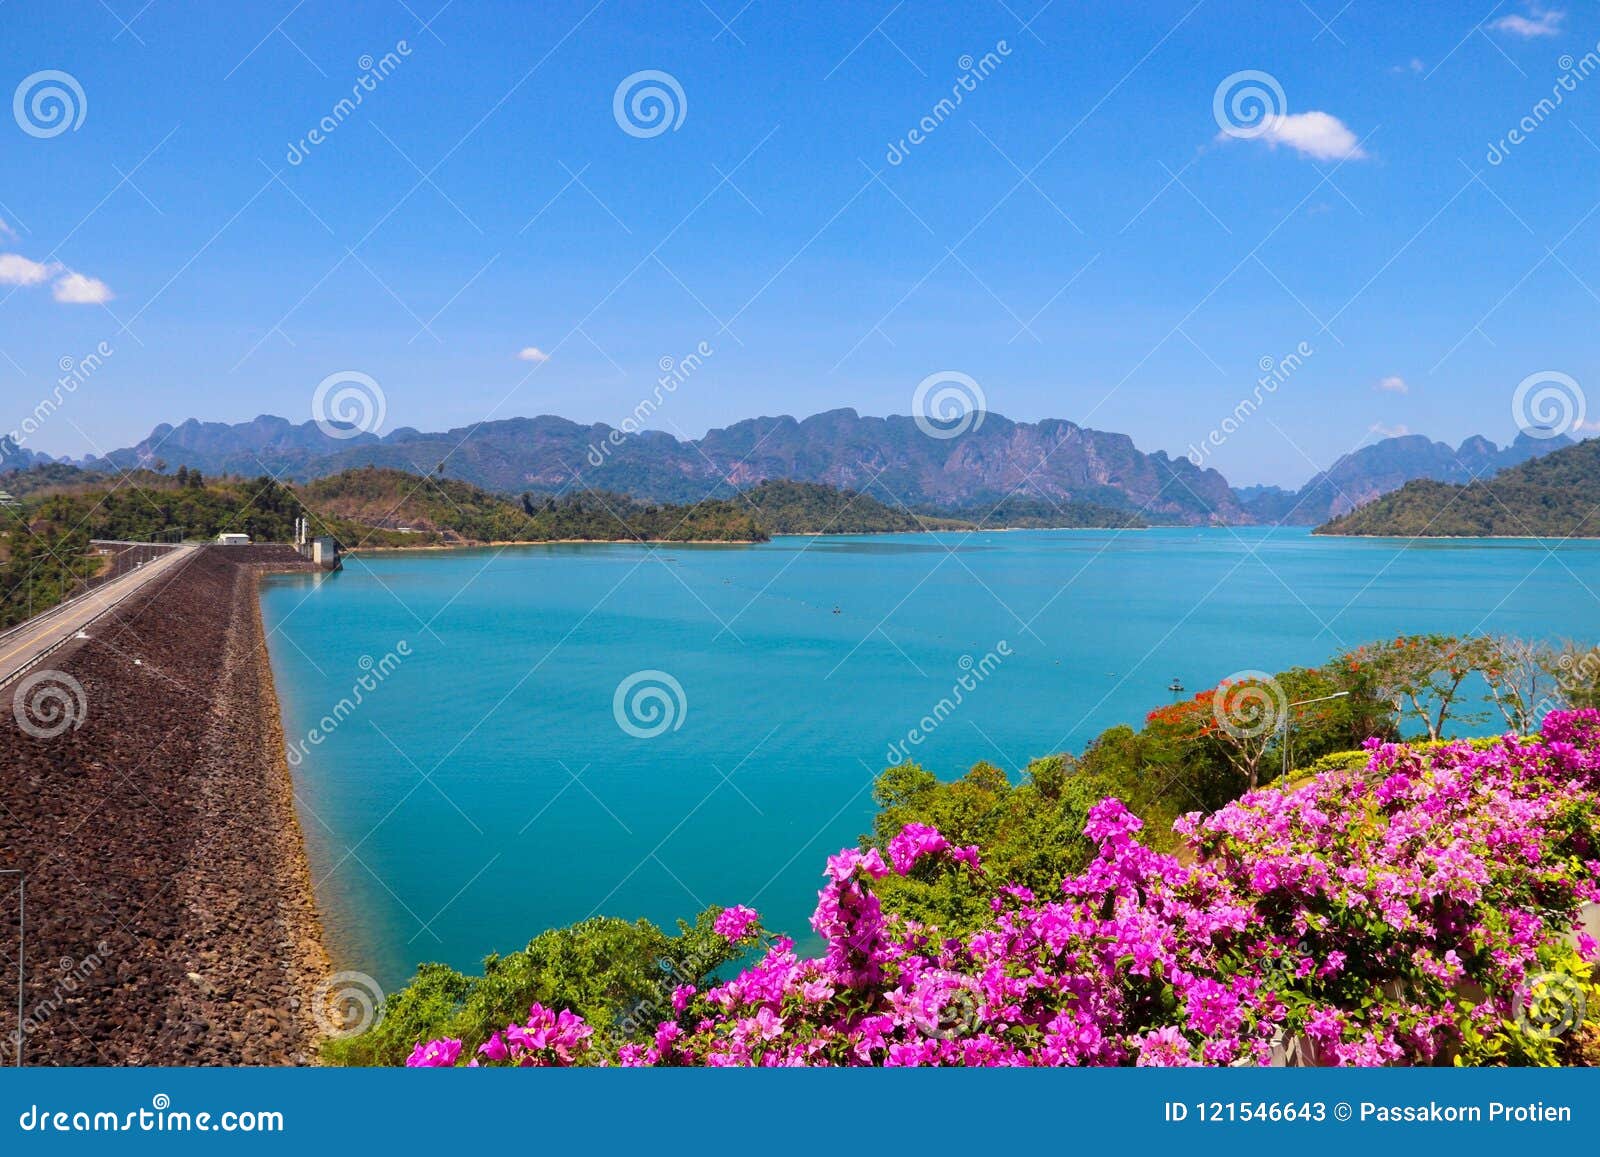 Landscape of Rajjaprabha Dam, Surat Thani, Thailand. Stock Image